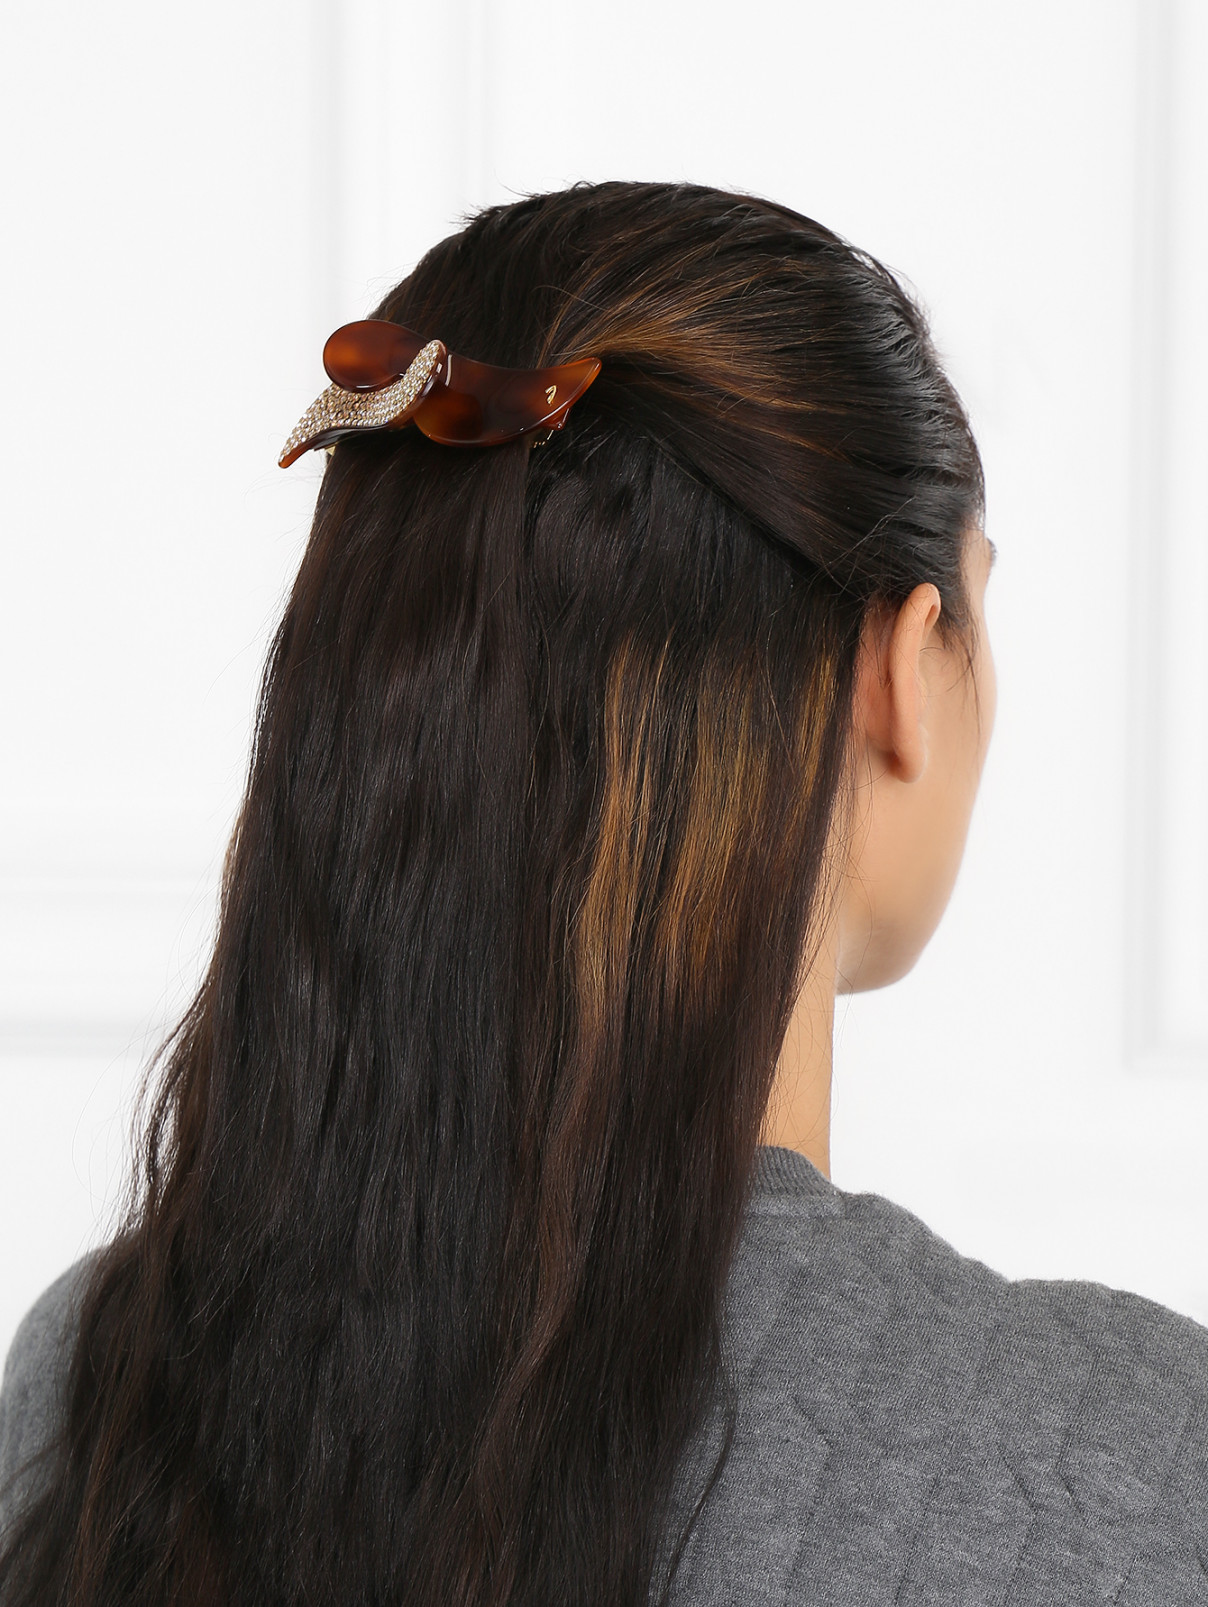 Заколка для волосы декорированная кристаллами Janeke  –  Модель Общий вид  – Цвет:  Коричневый